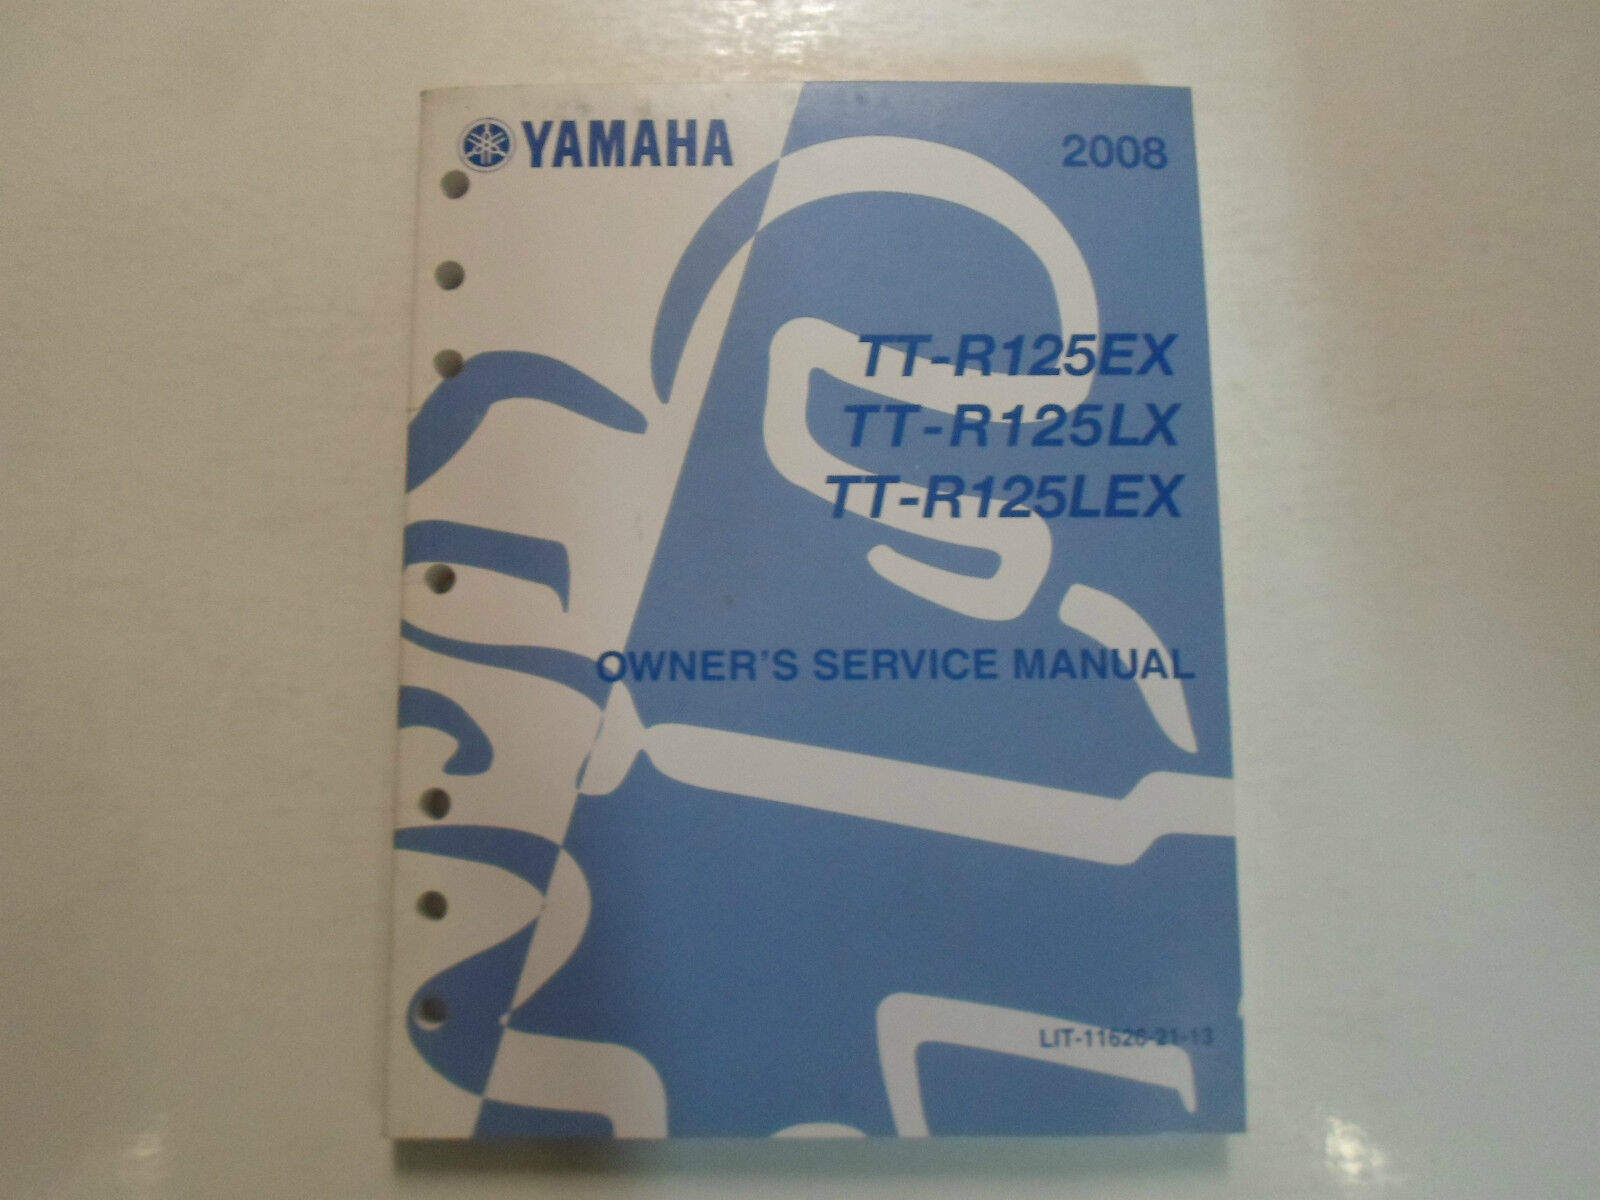 2008 Yamaha TT-R125EX TT-R125LX TT-R125LEX Service Shop Manual LIT-11626-21-13 - $24.70